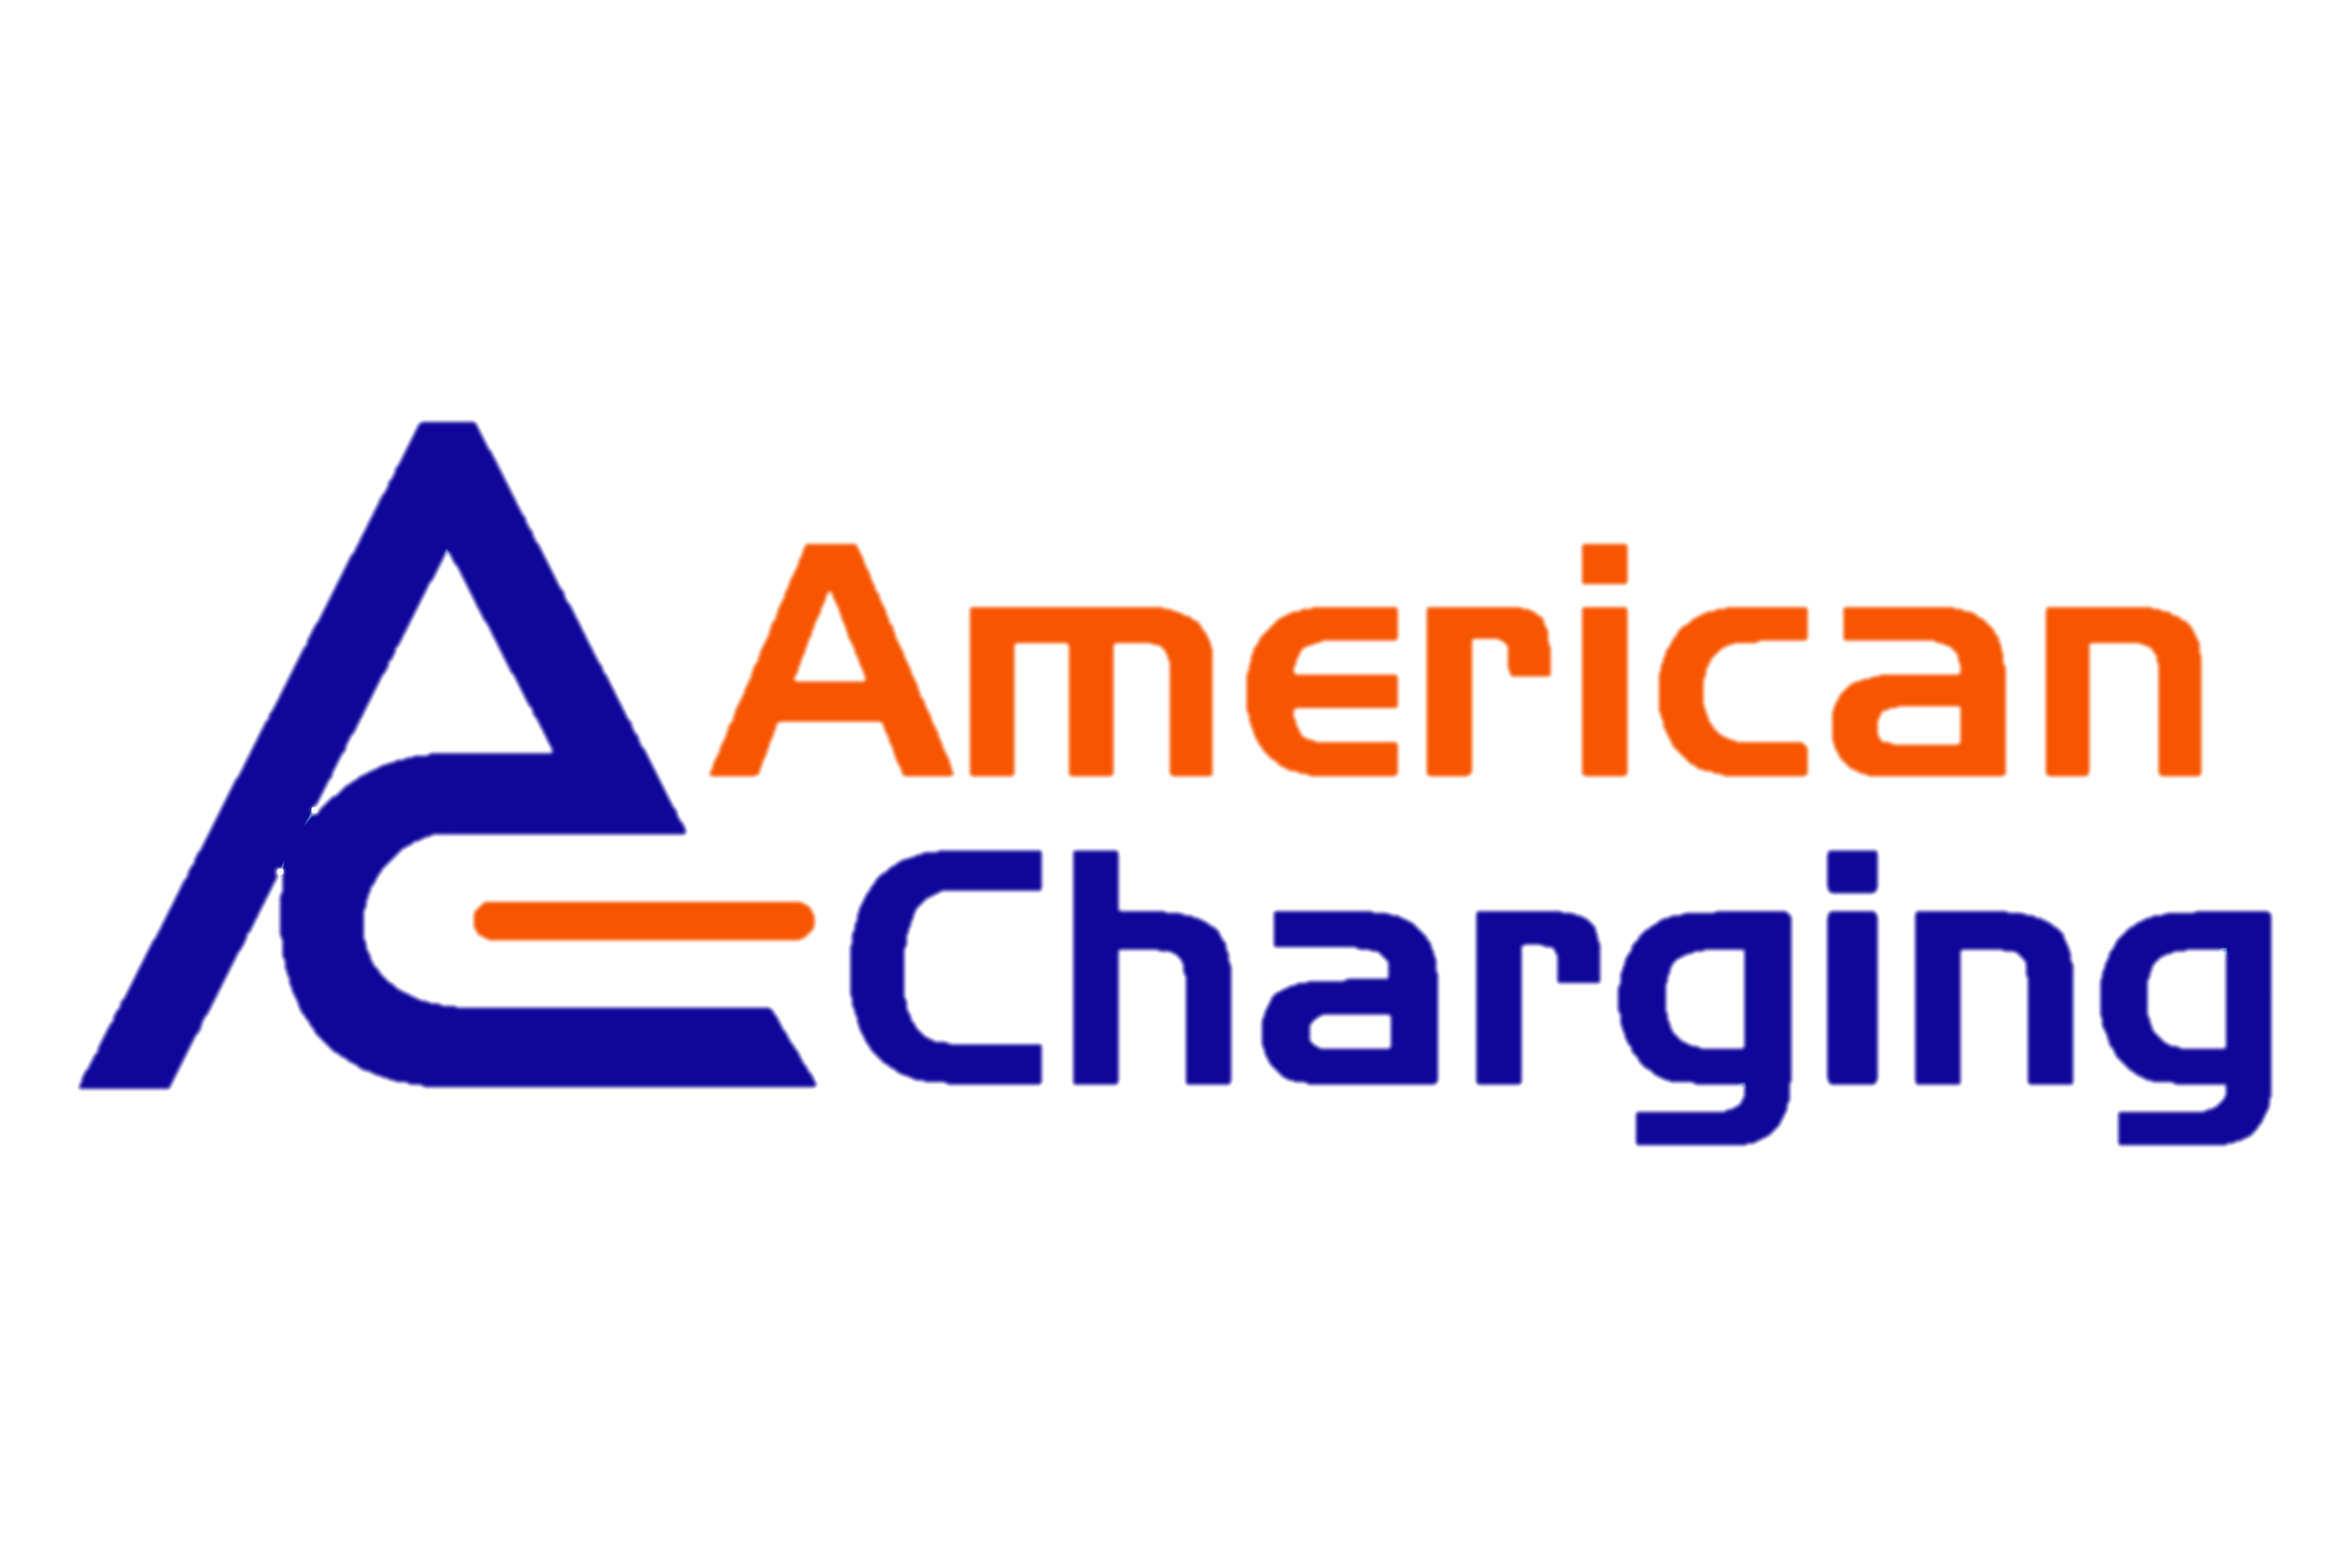 American Charging